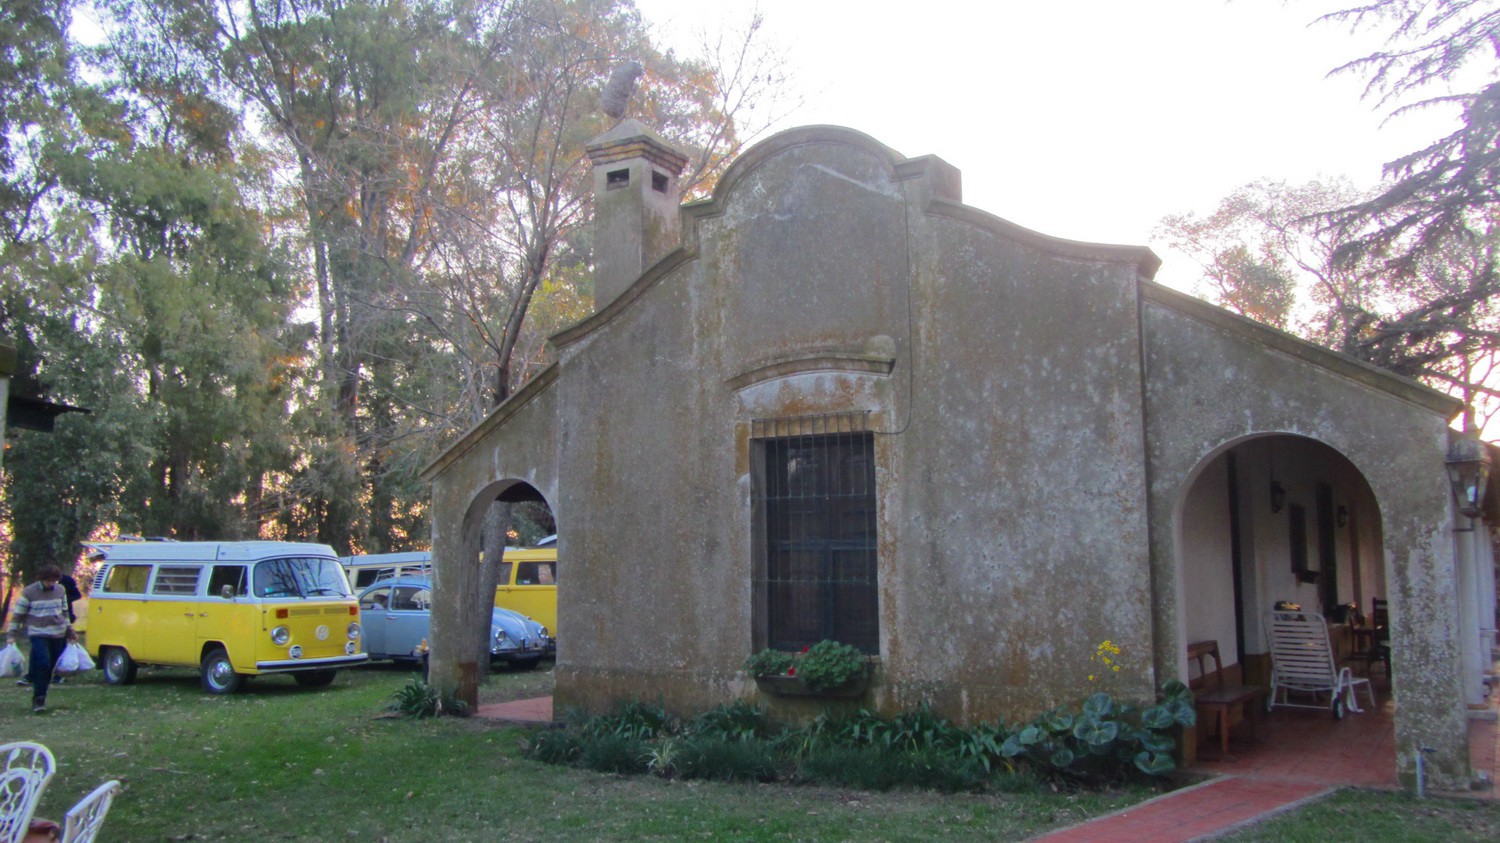 Guest house of El Arenal del Carmen